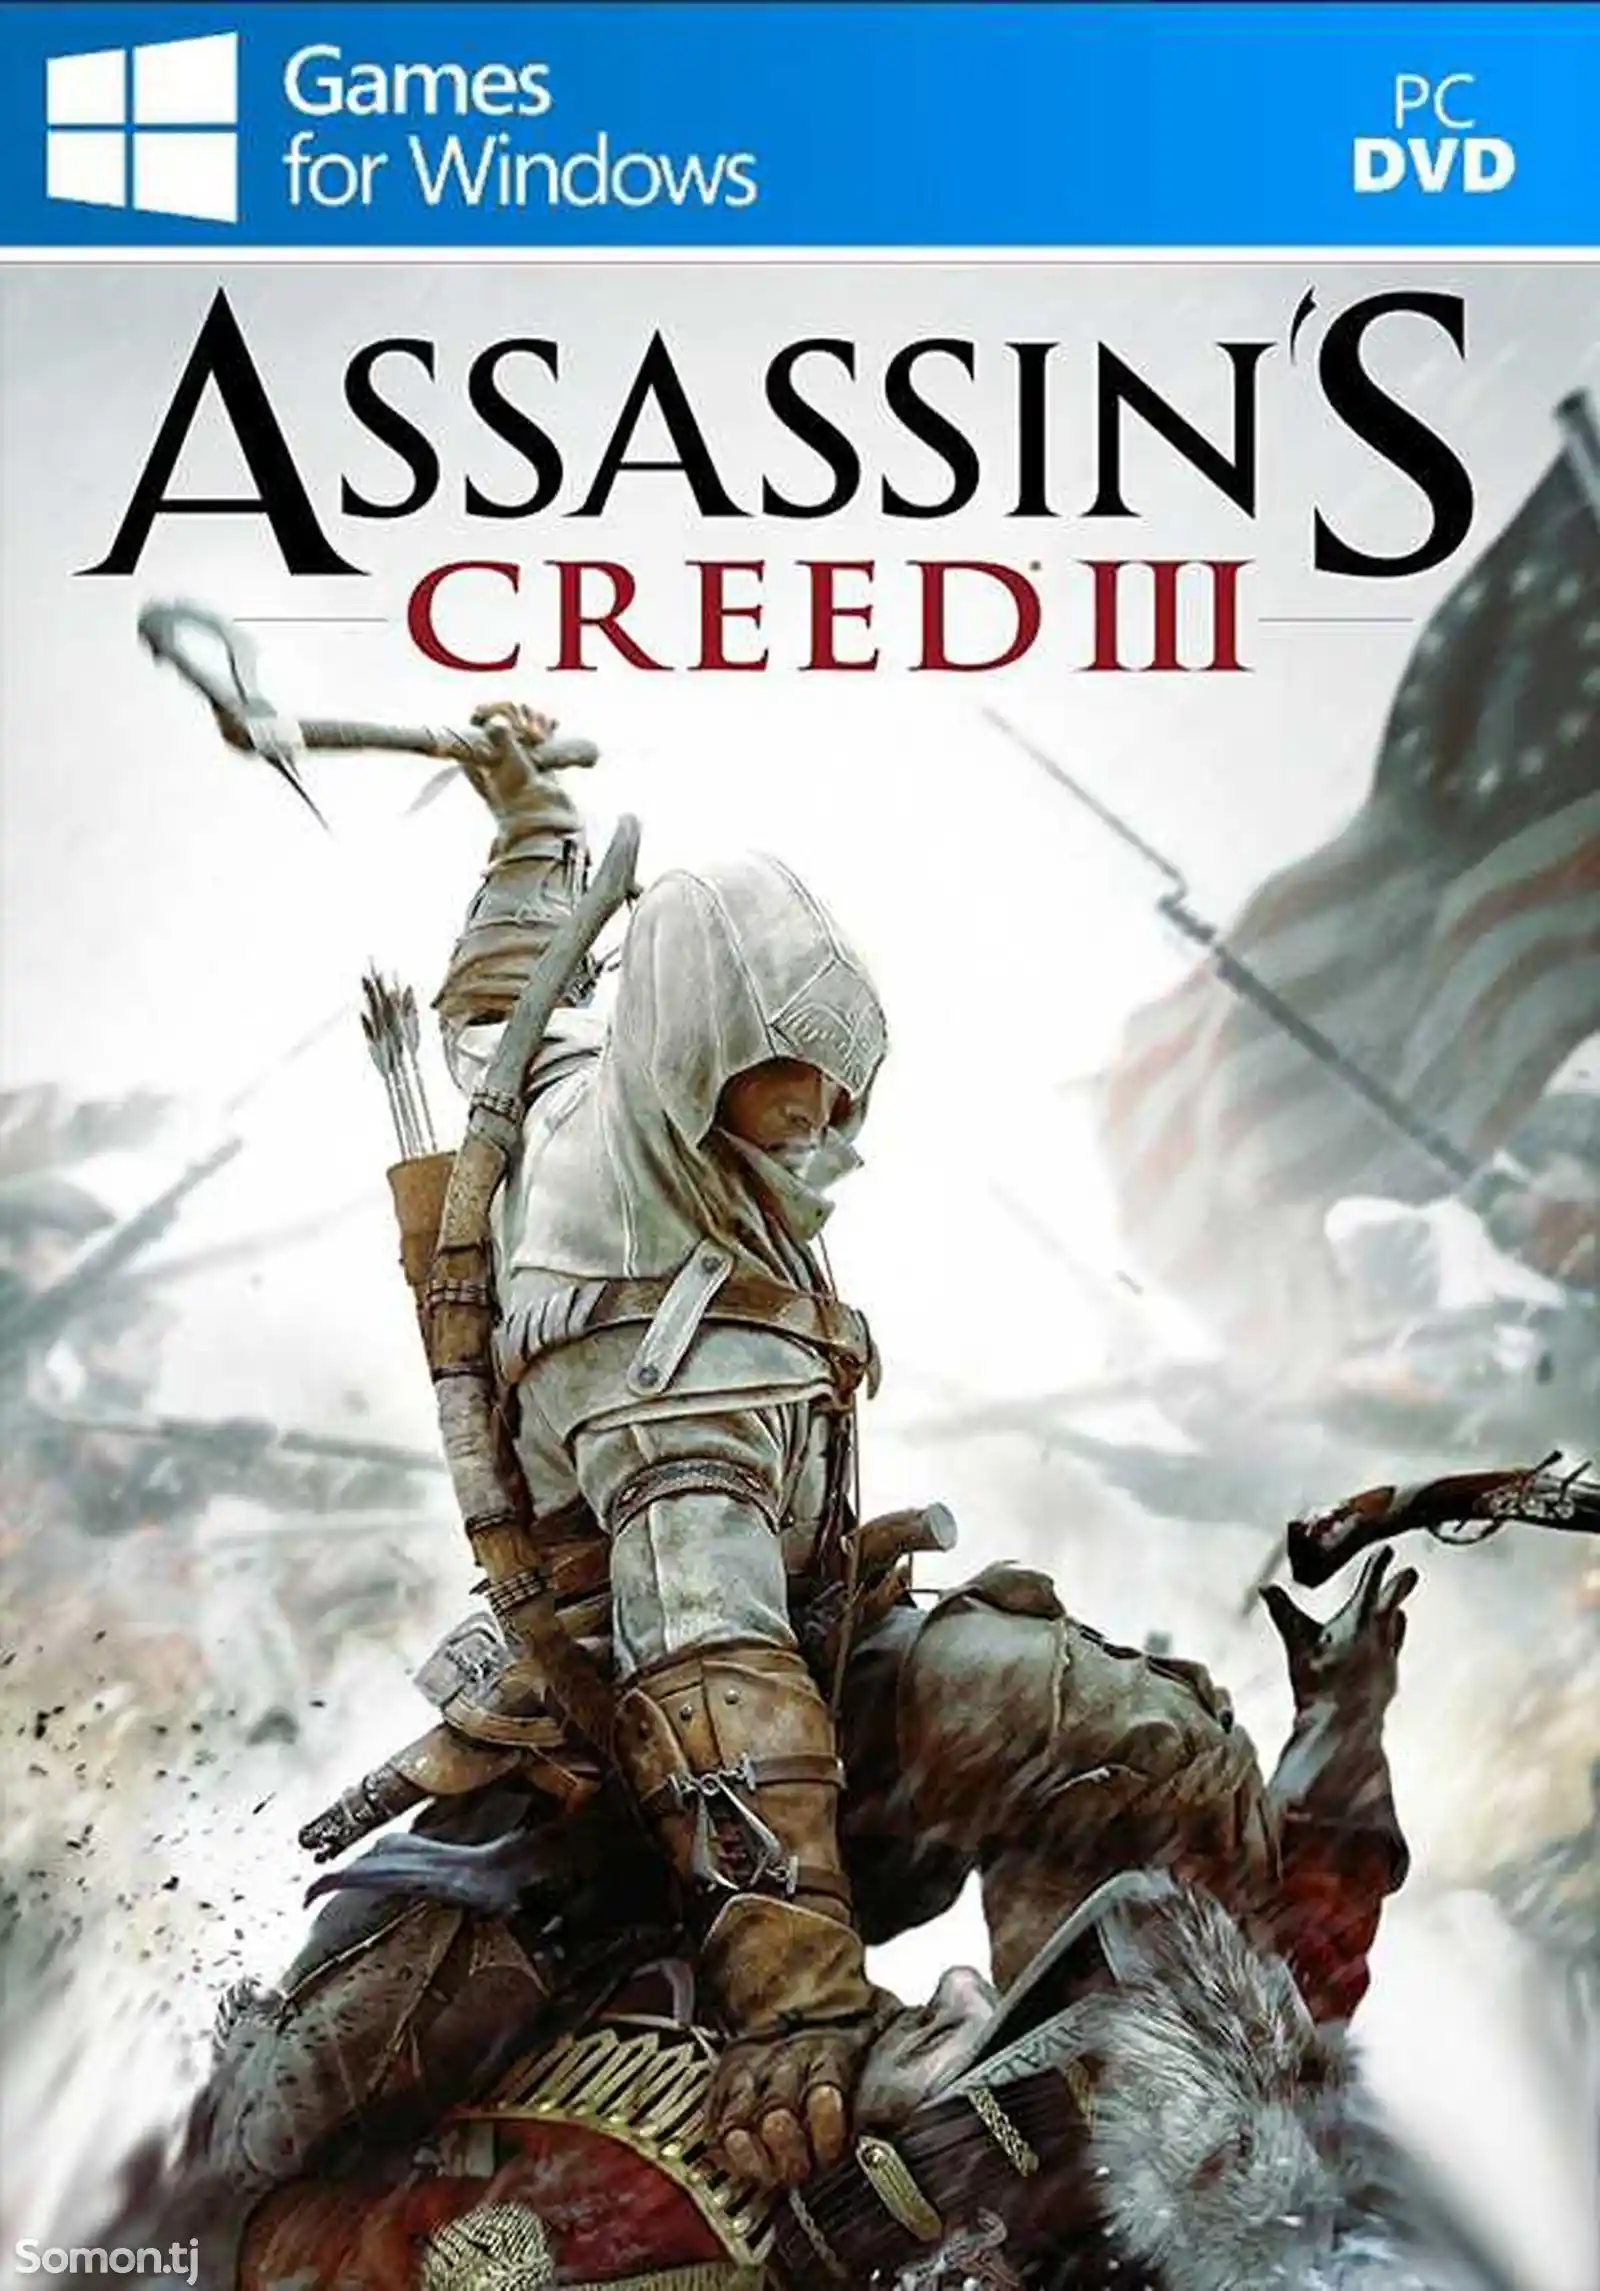 Игра Assassins creed 3 для компьютера-пк-pc-1